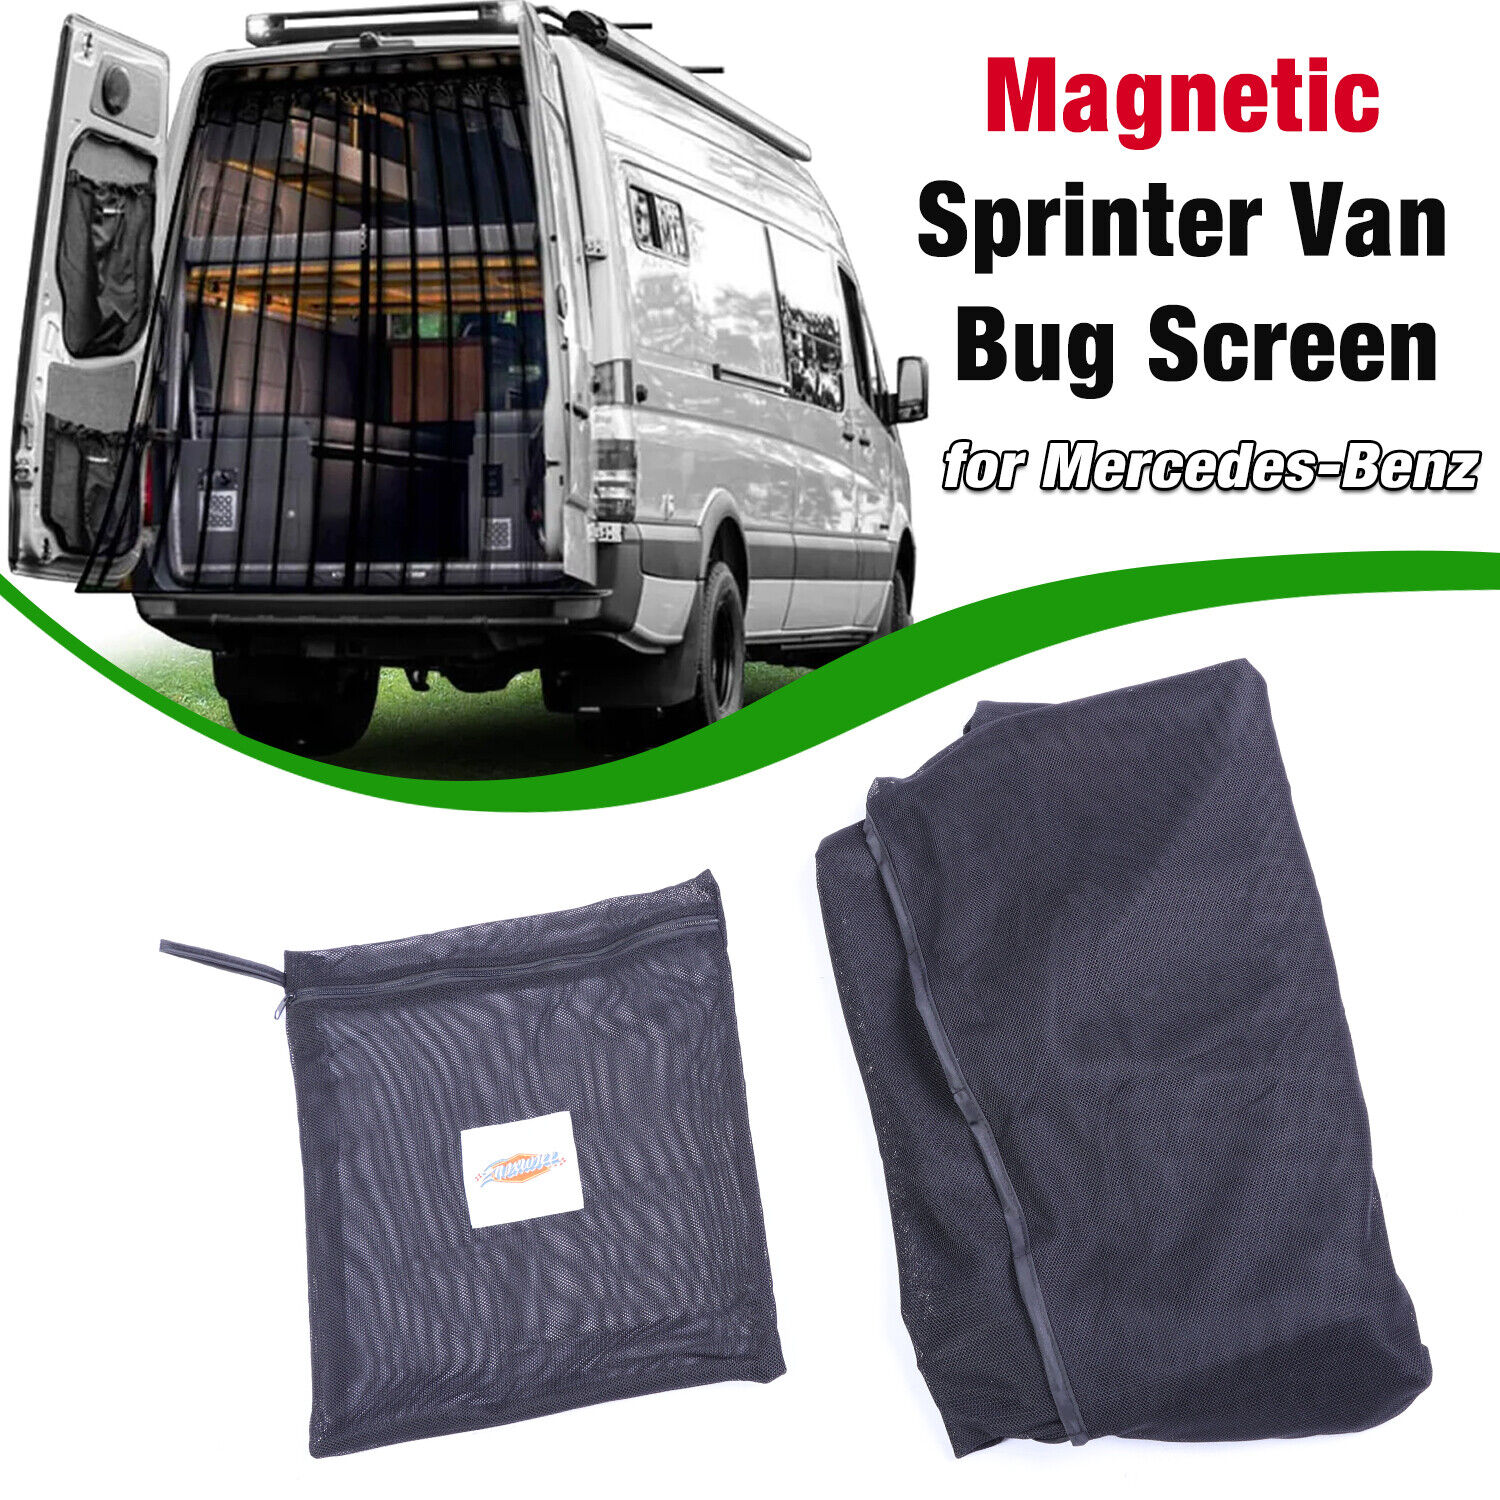 Magnetic Sprinter Van Bug Fly Screen for Mercedes-Benz Rear Door Zipper Style